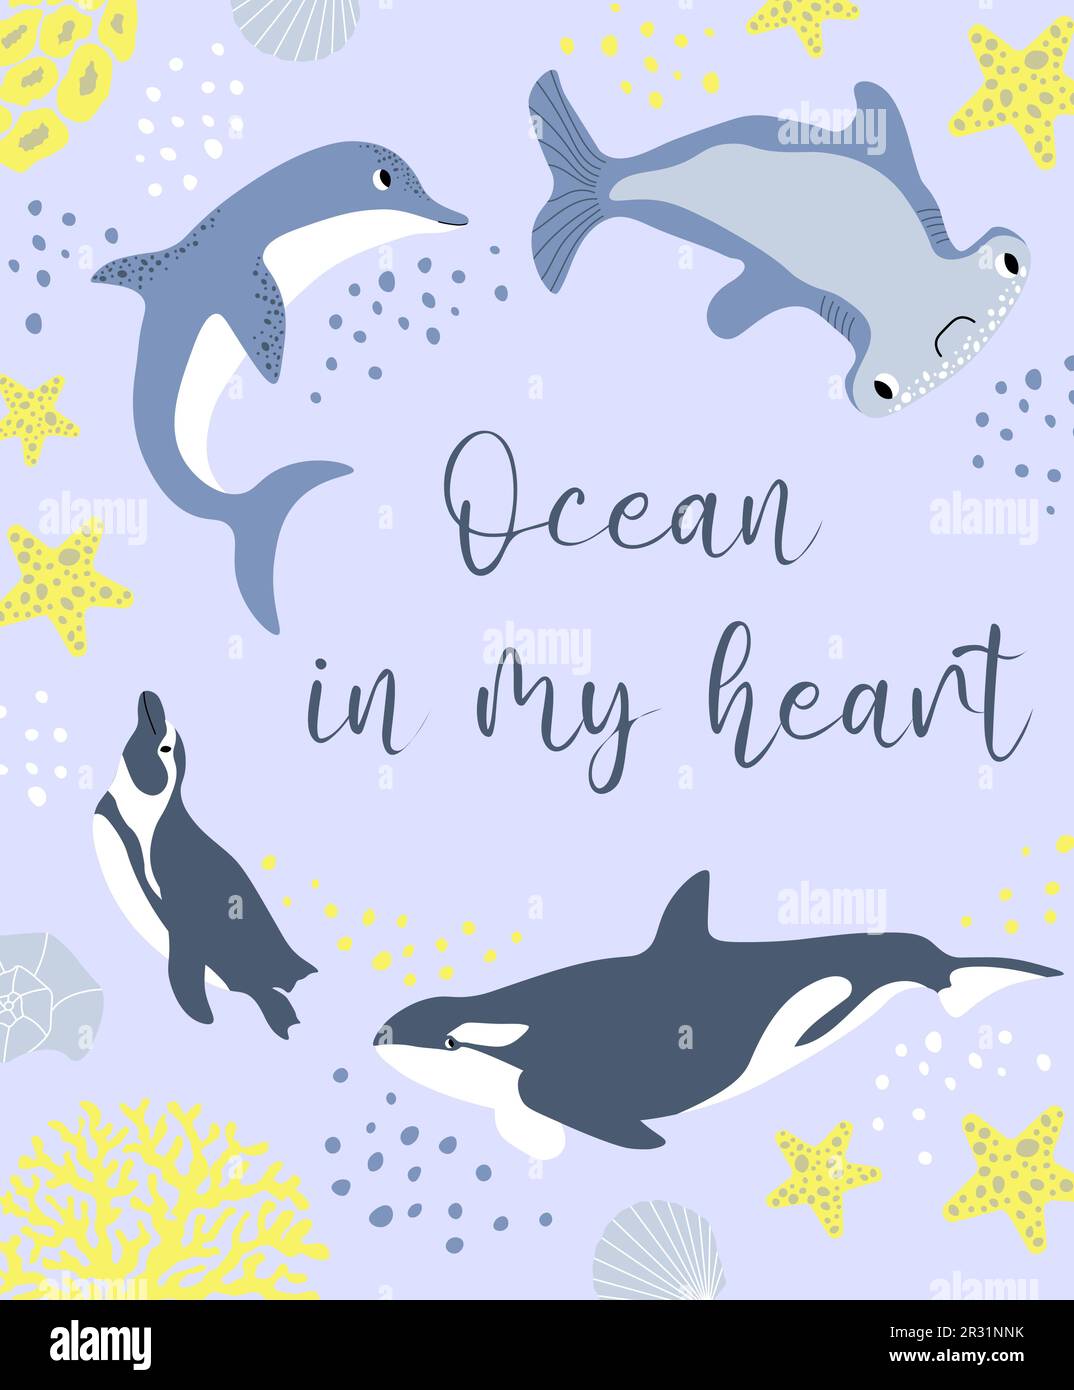 Vektor Ozean Illustration mit Pinguin, Delfin, Killerwal, Hammerhaie Fische, Korallen. Ozean in meinem Herzen - moderne Schrift. Unterwassertiere. Ökologie Stock Vektor